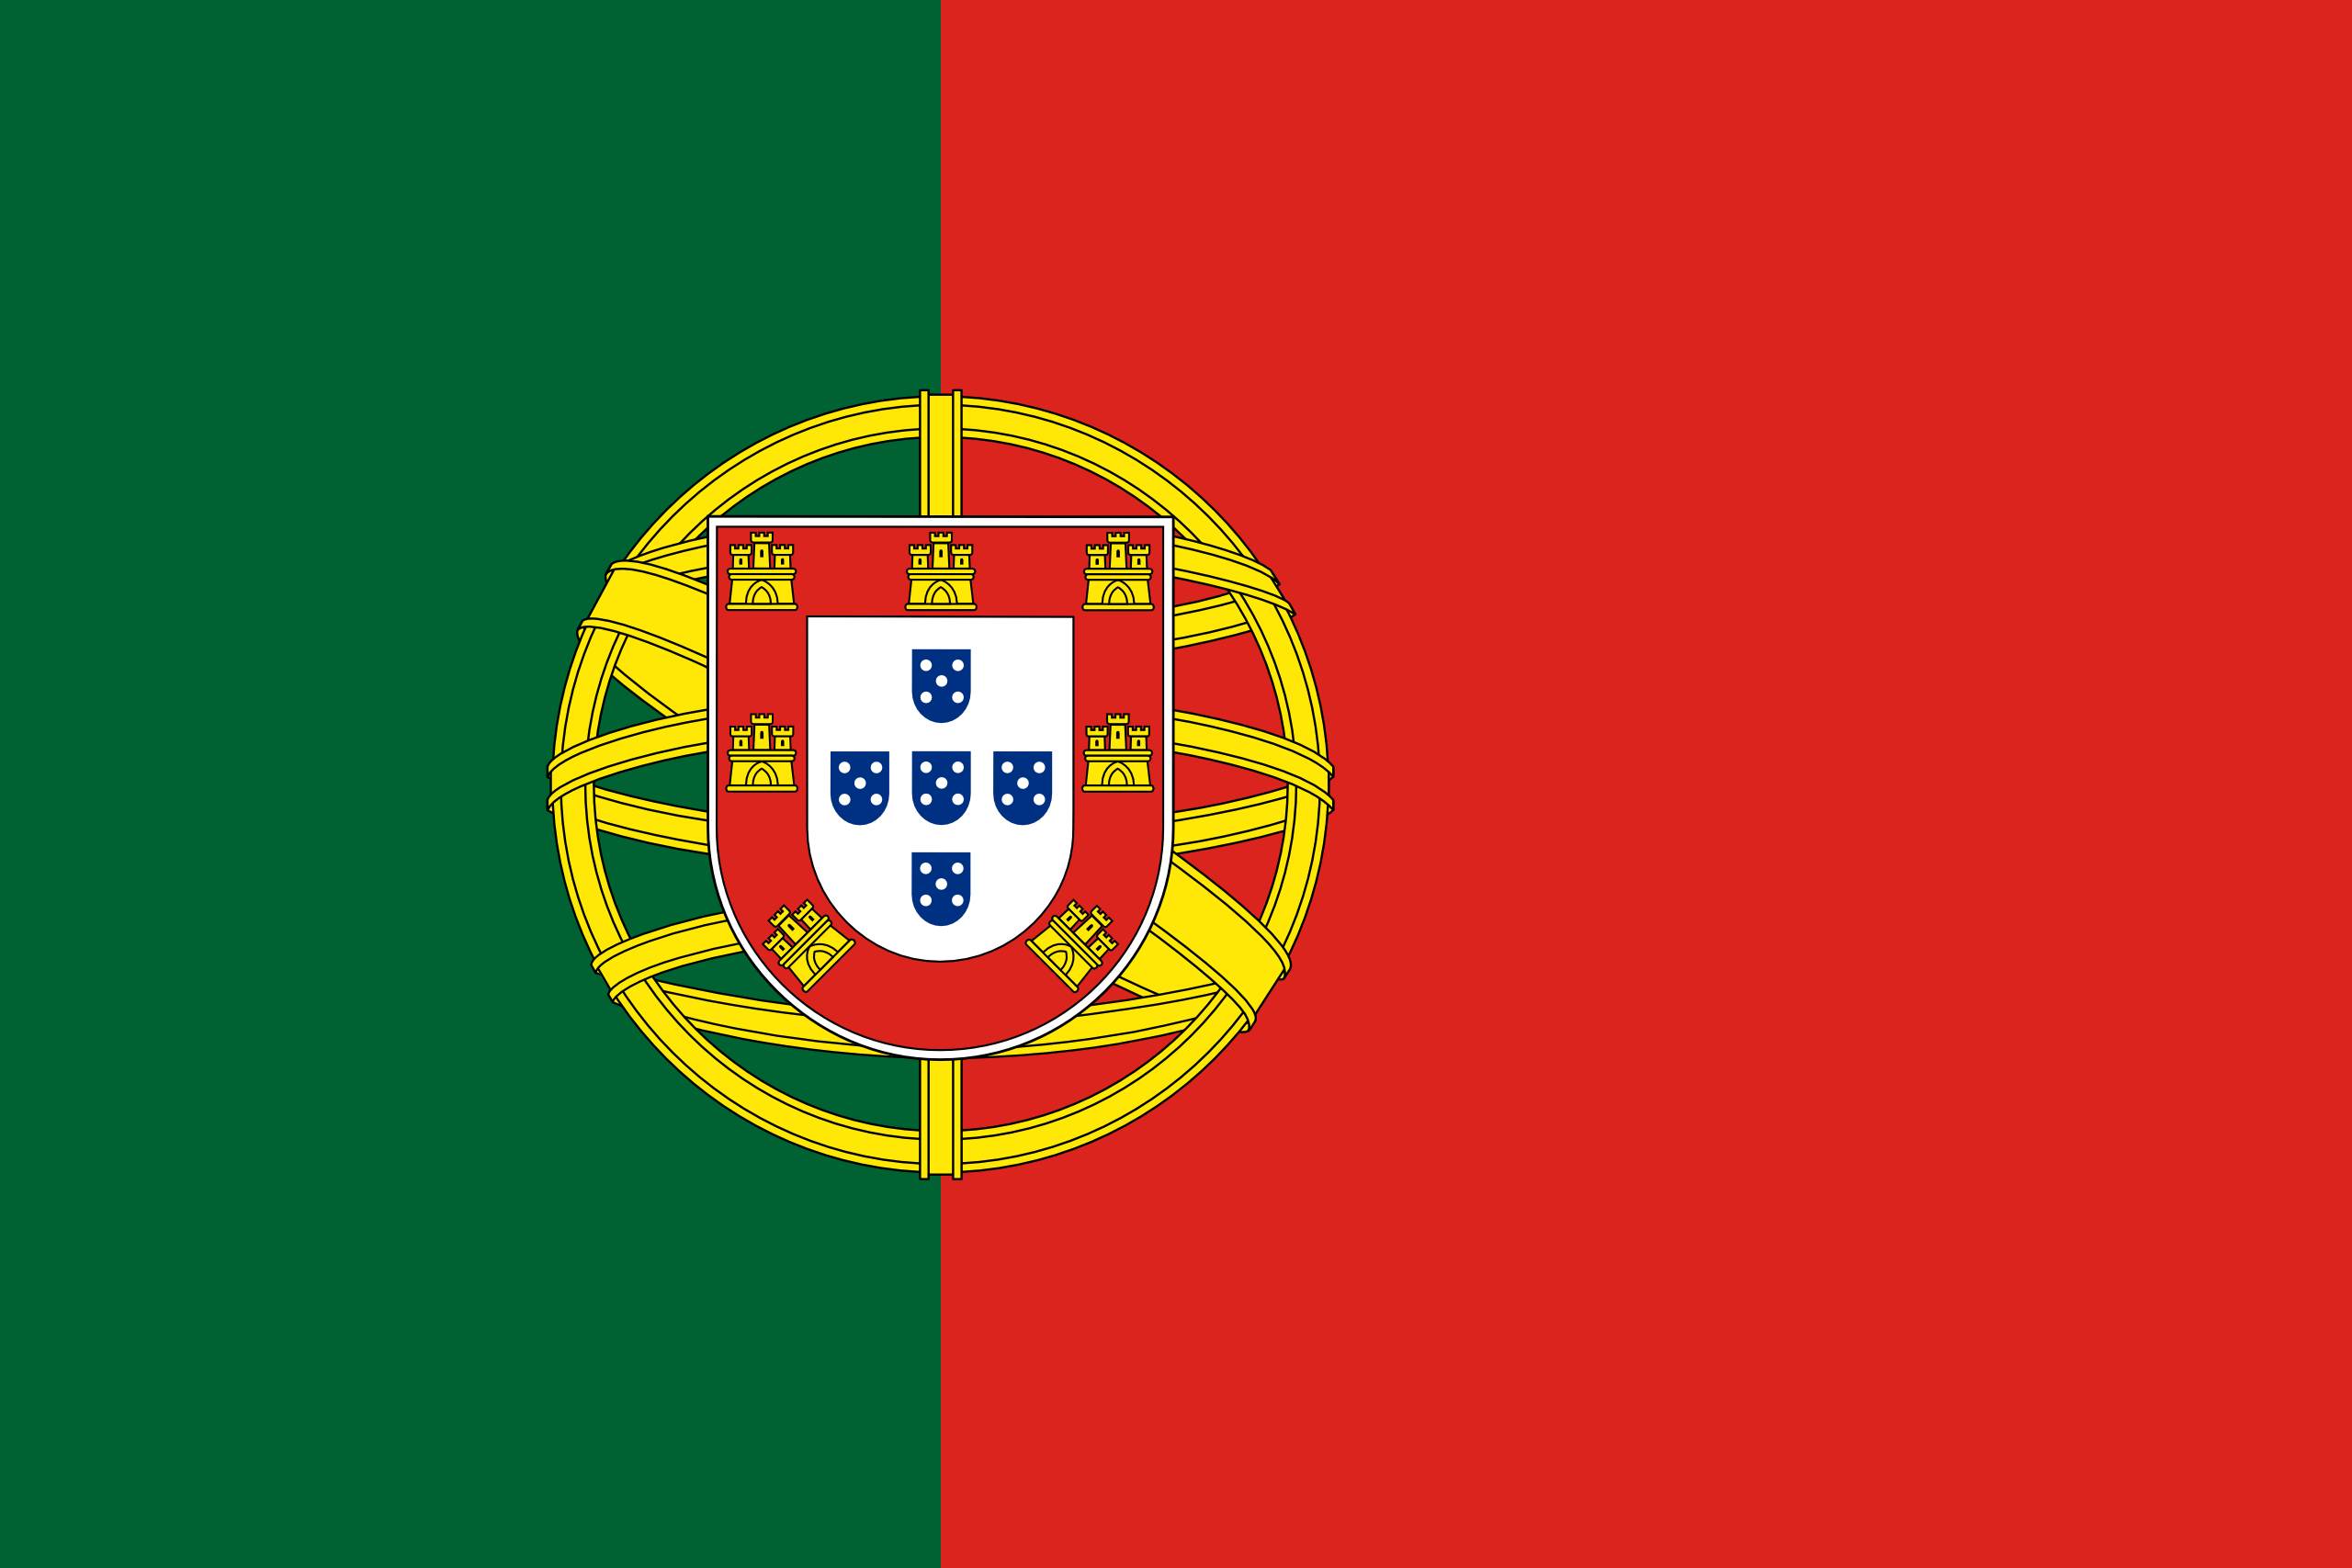 drapeau portuguais